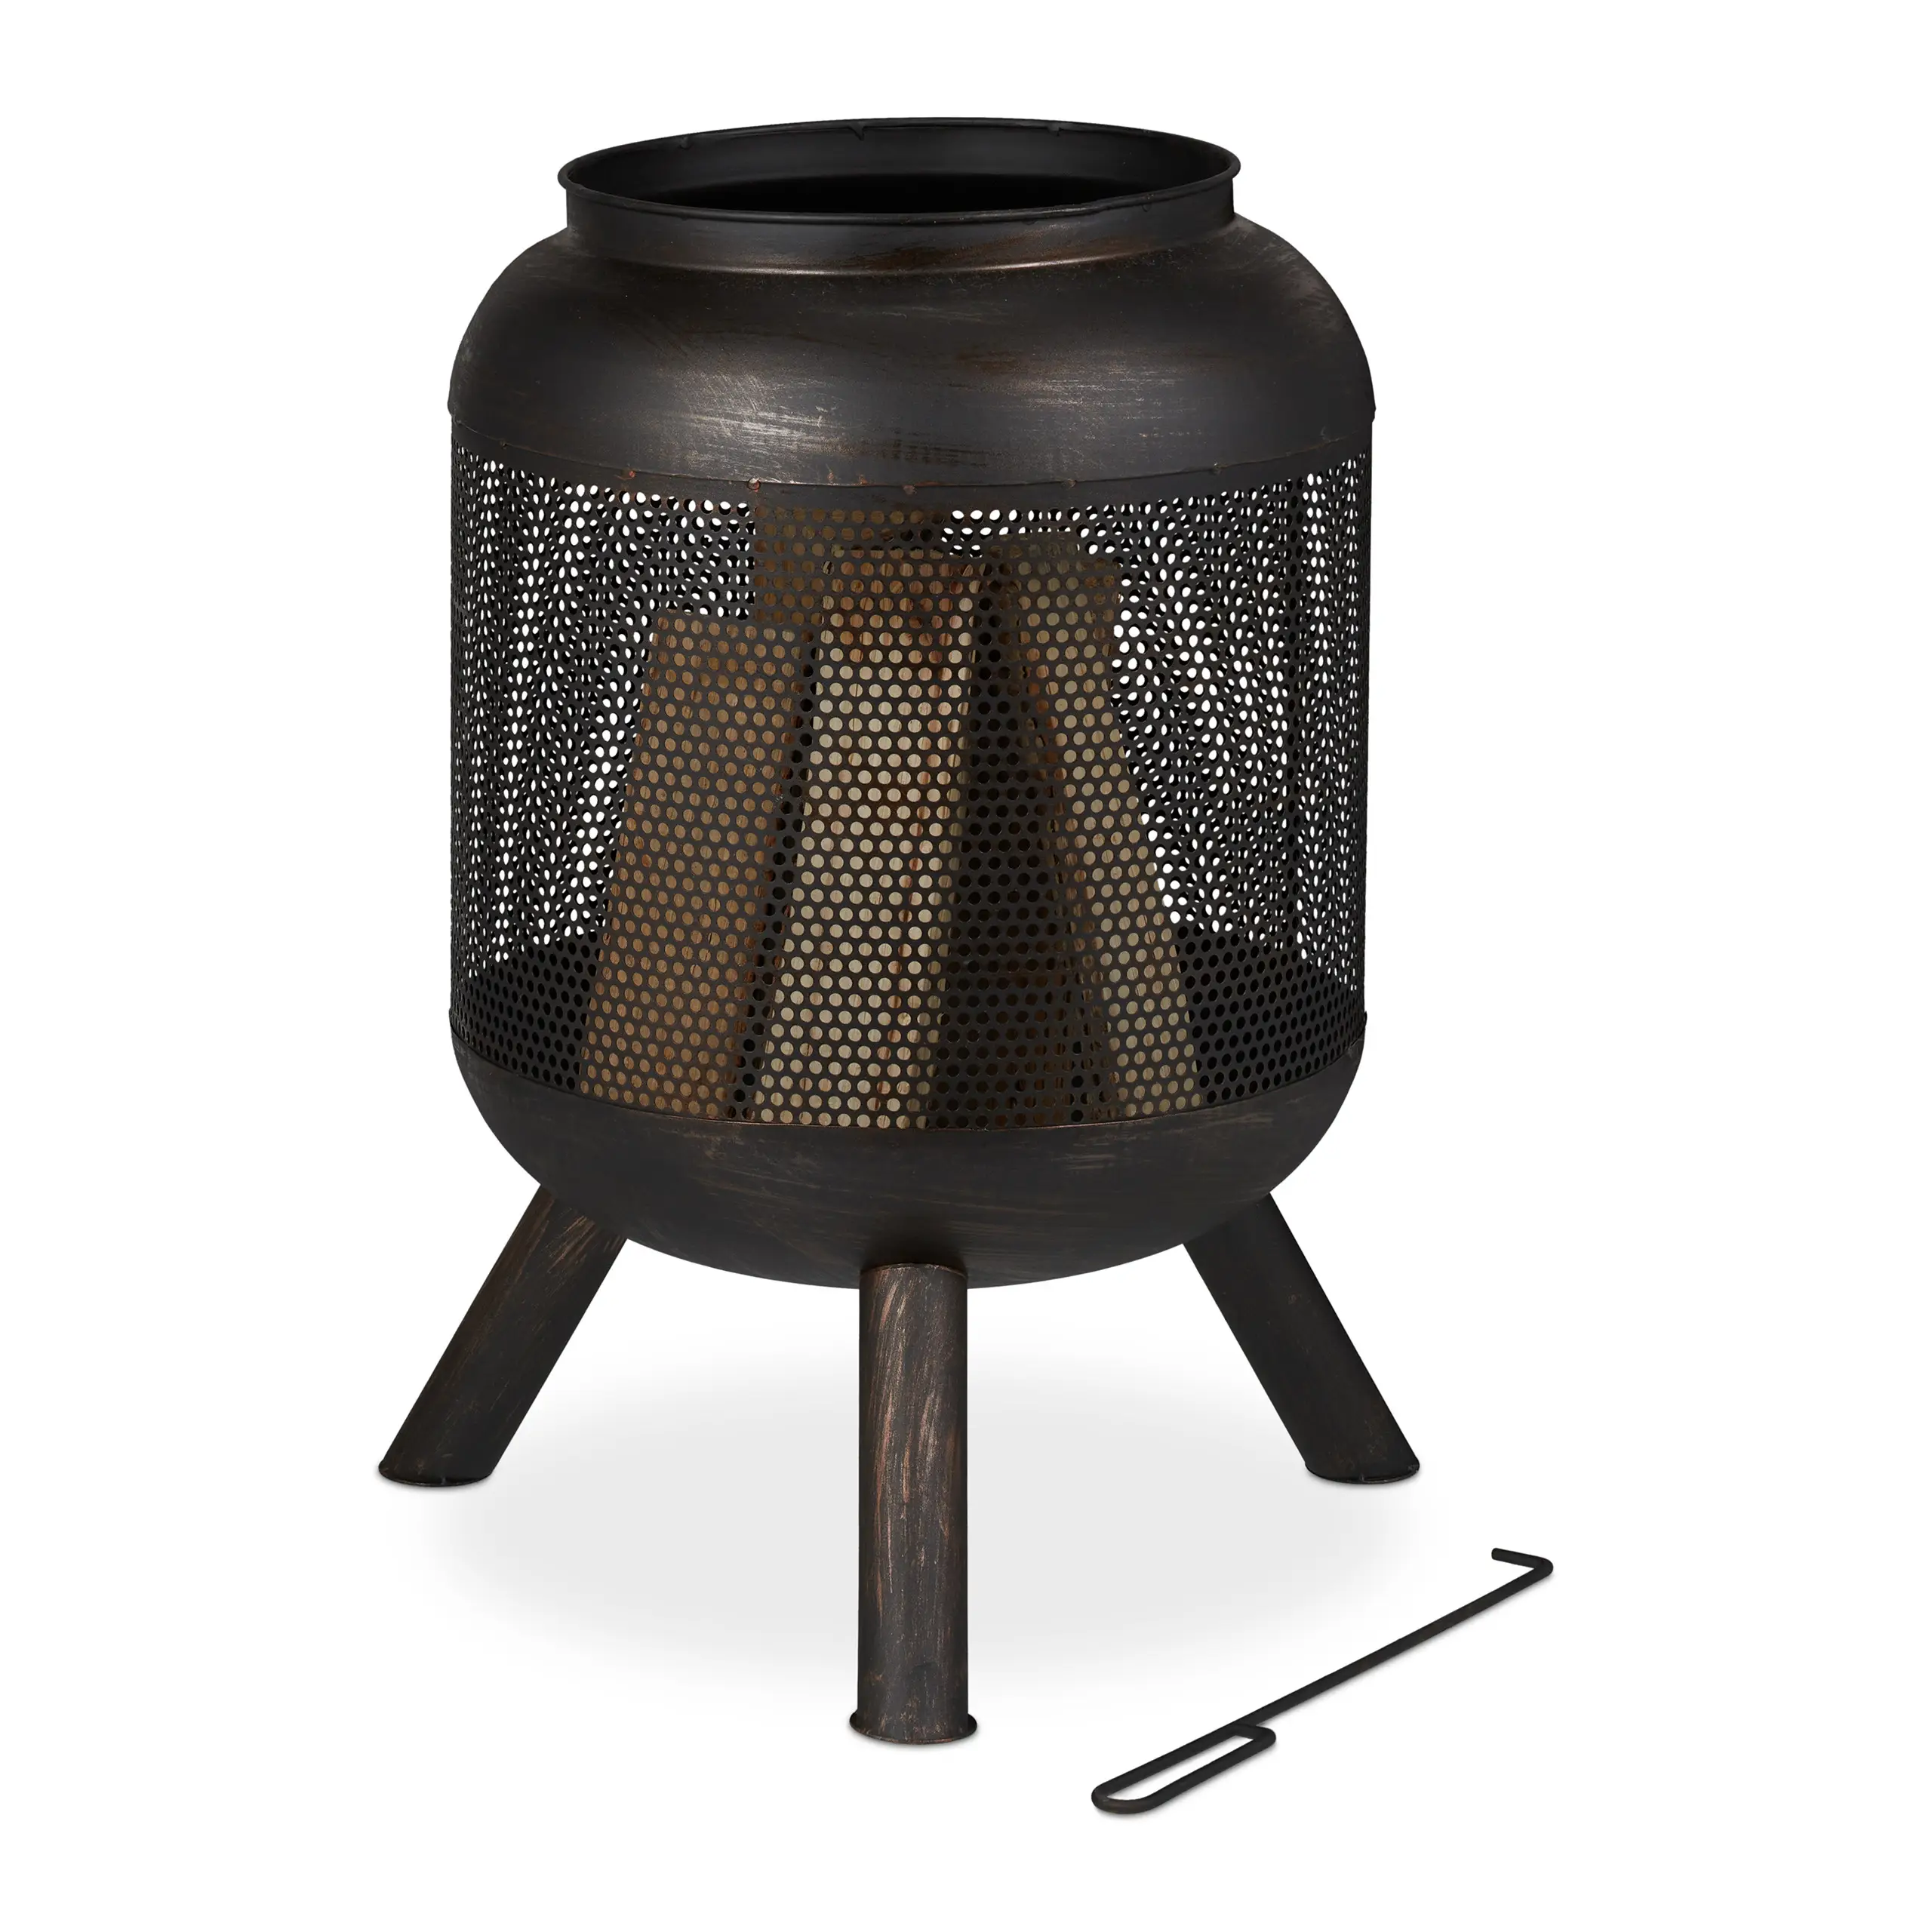 Feuerkorb Krug mit schwarz-bronze Mesh